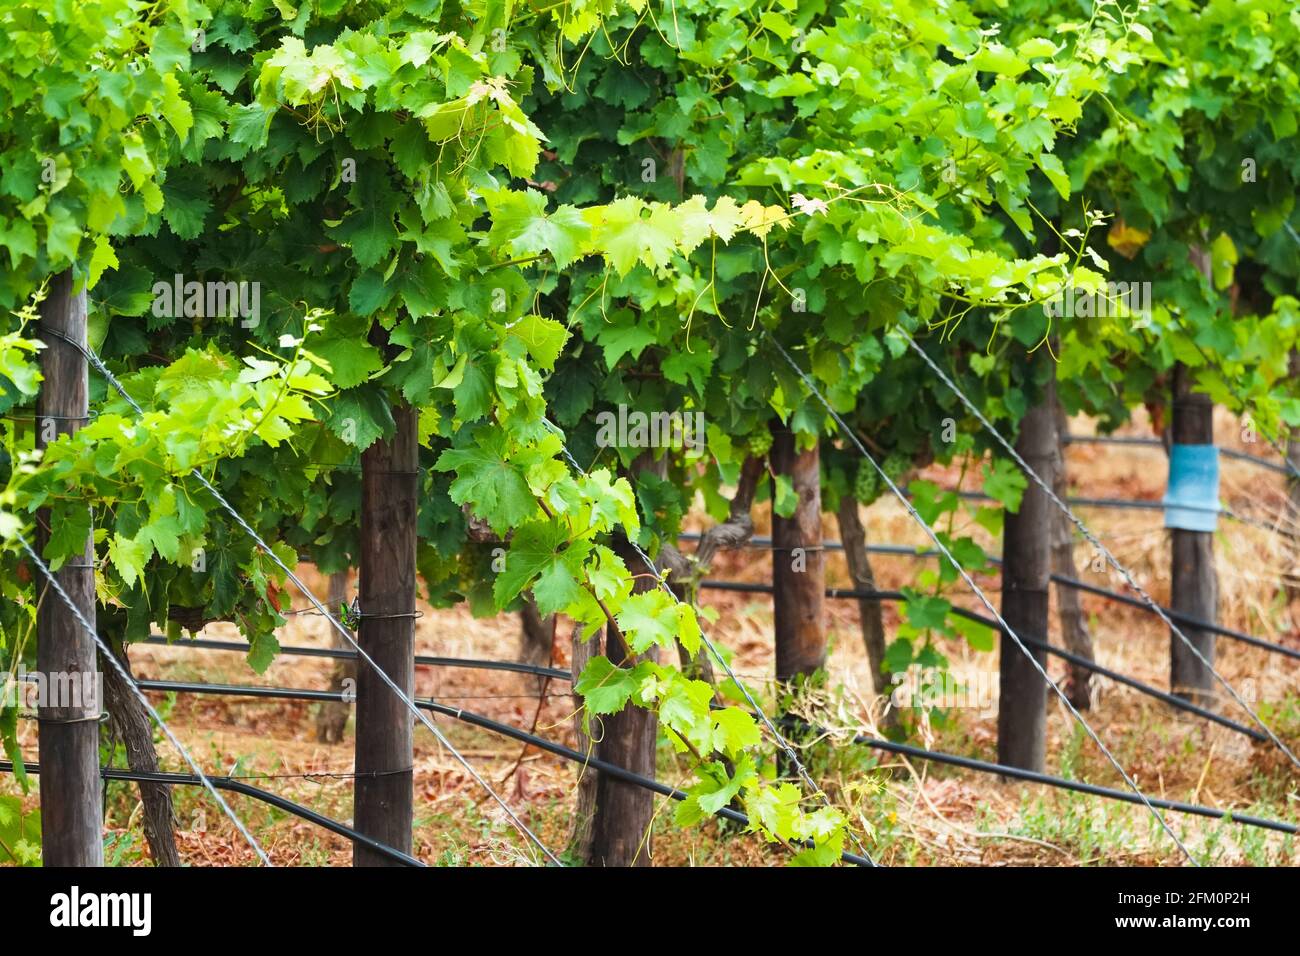 Traubenblätter auf einer Weinrebe in einem Weinberg in der Nähe im Sommer in Kapstadt, Südafrika Konzept Weinindustrie, Weinbau, Weinbau Stockfoto